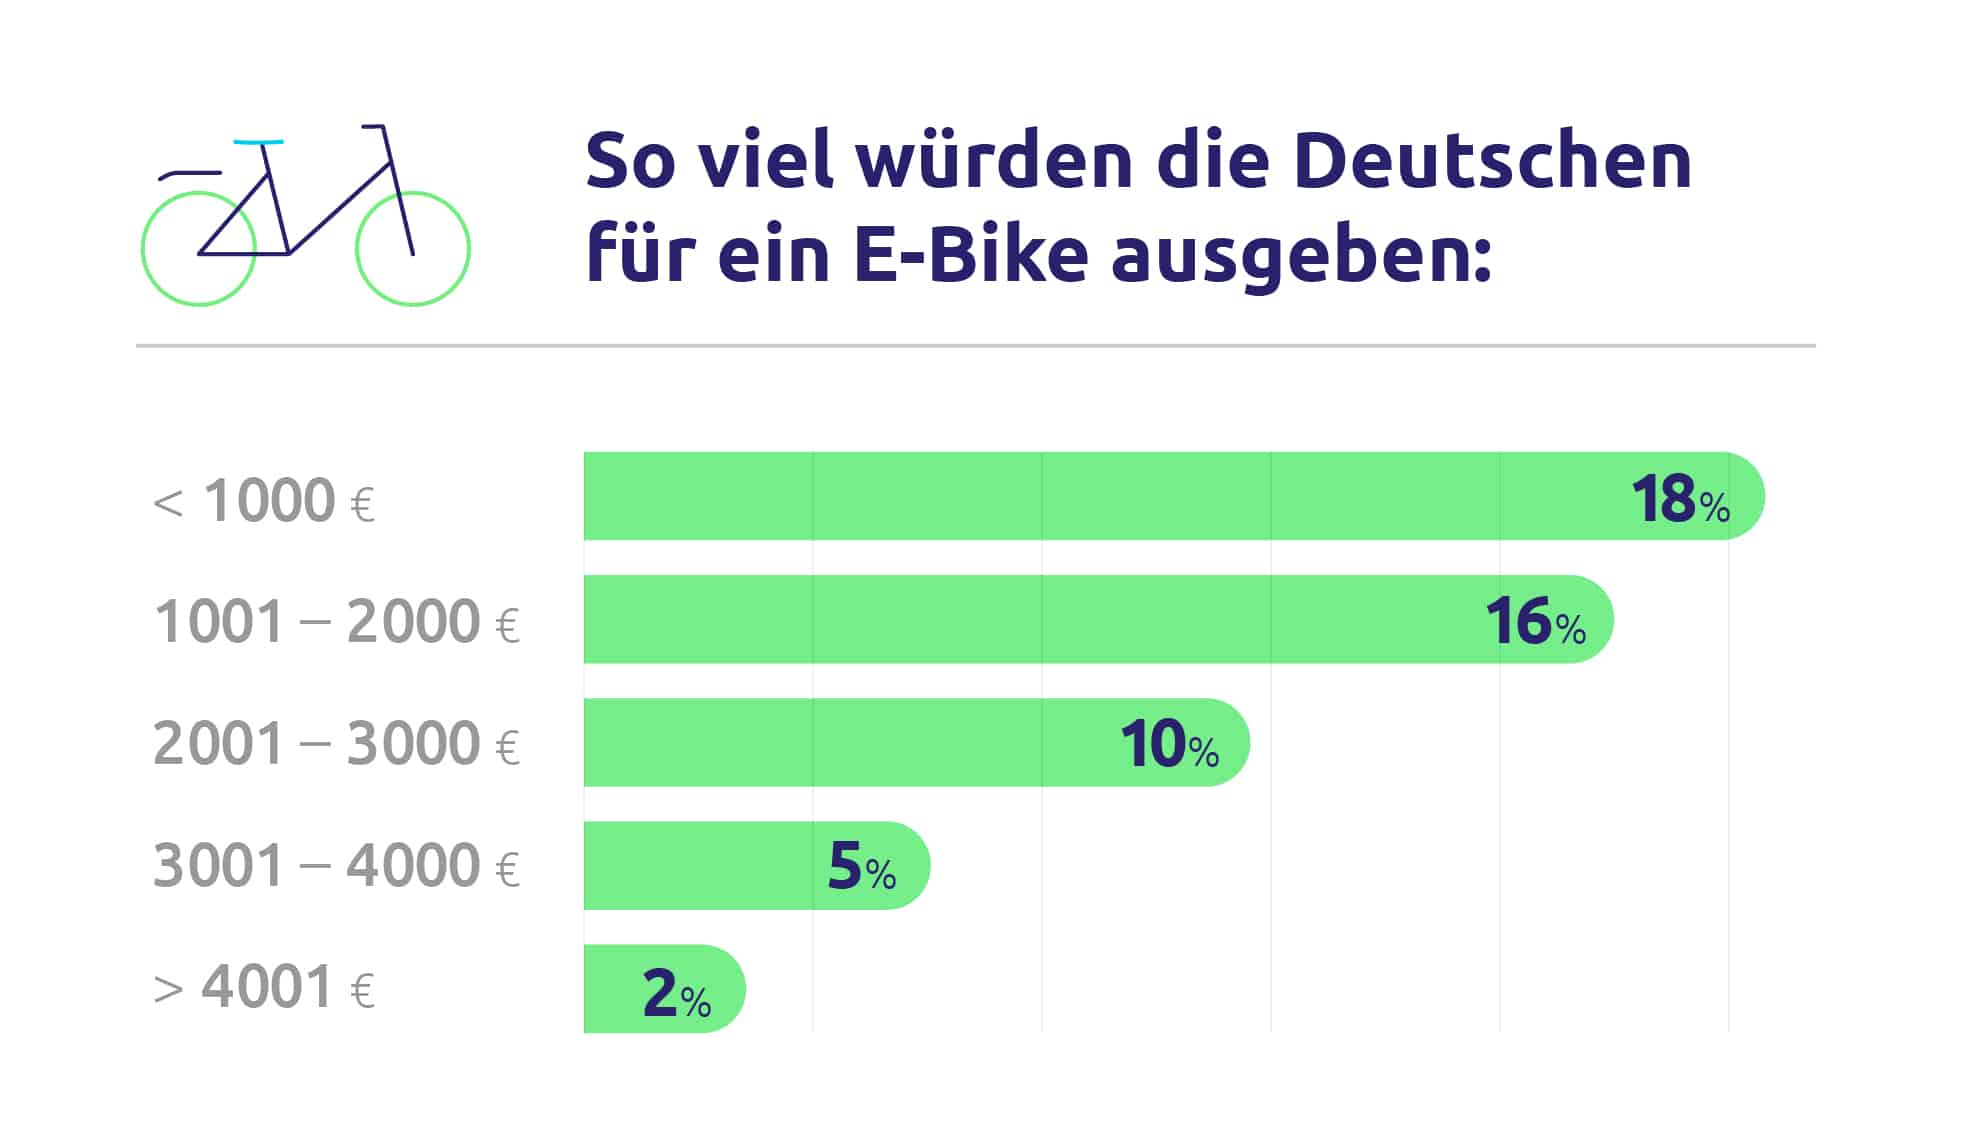 urban e-bike |  Electronic cargo bike |  E-Mountainbike - Upway, how much respondents would pay for an e-bike - eBikeNews